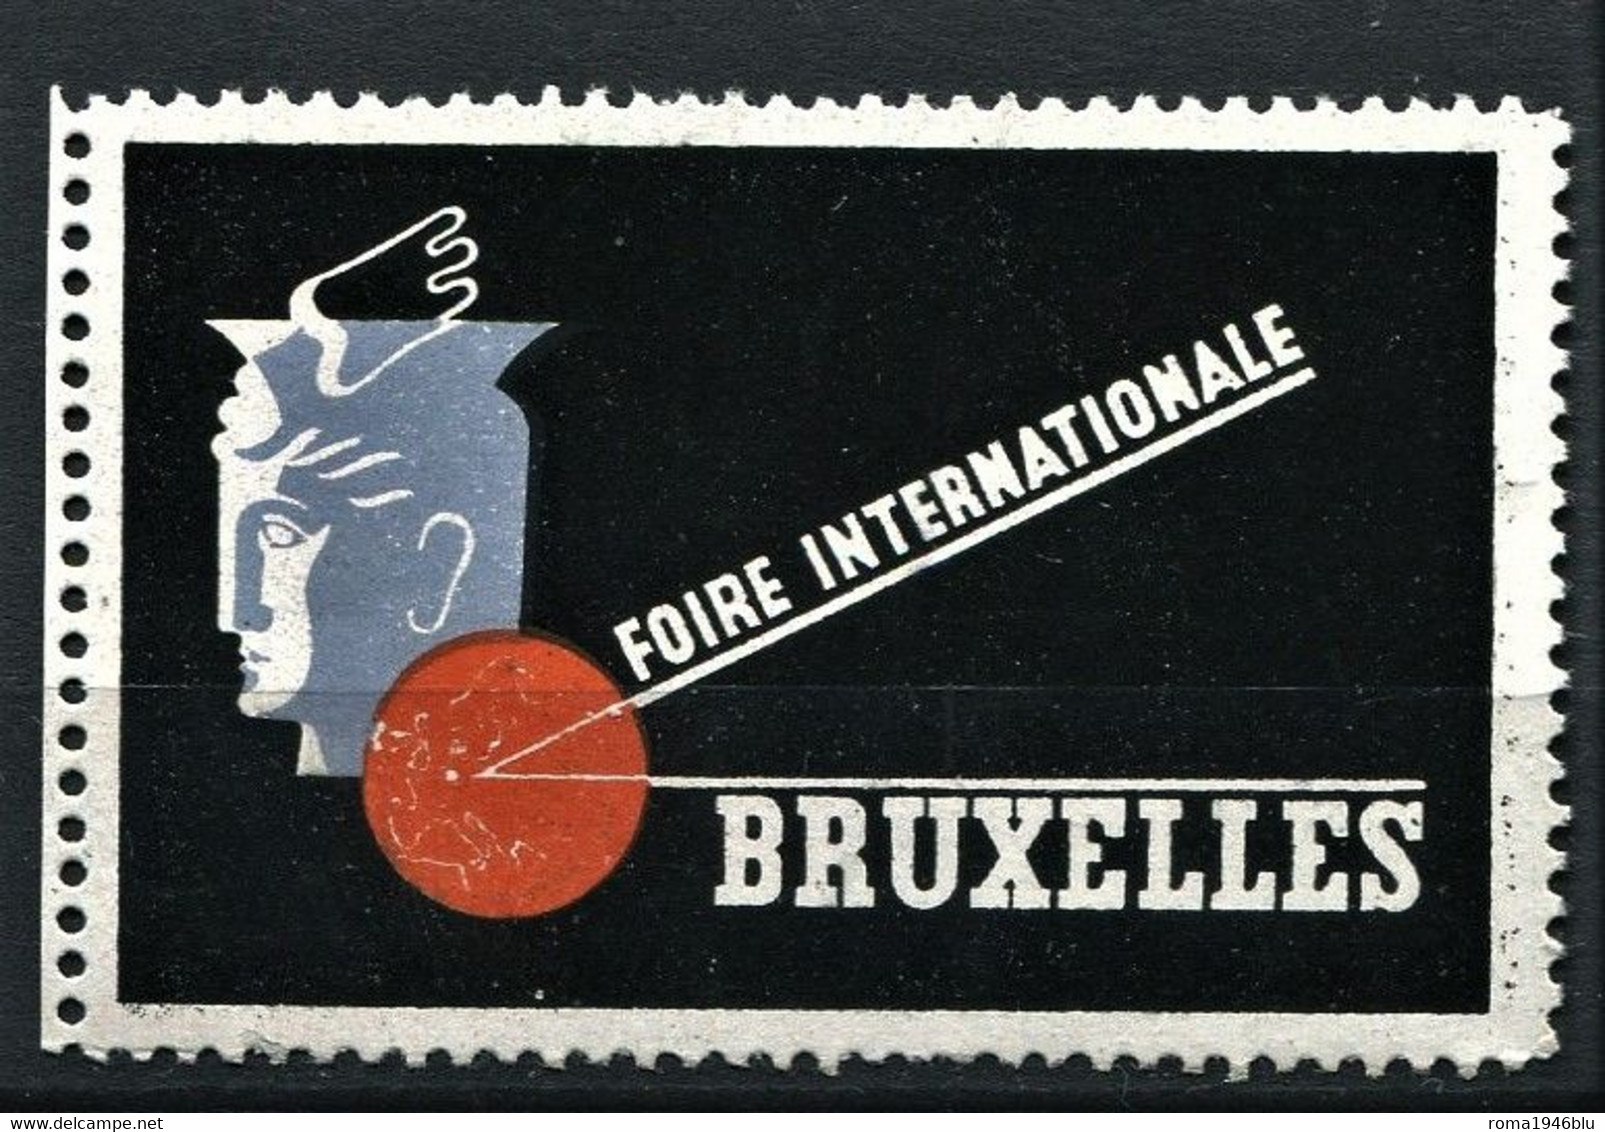 BRUXELLES FOIRE INTERNATIONALE - Erinofilia